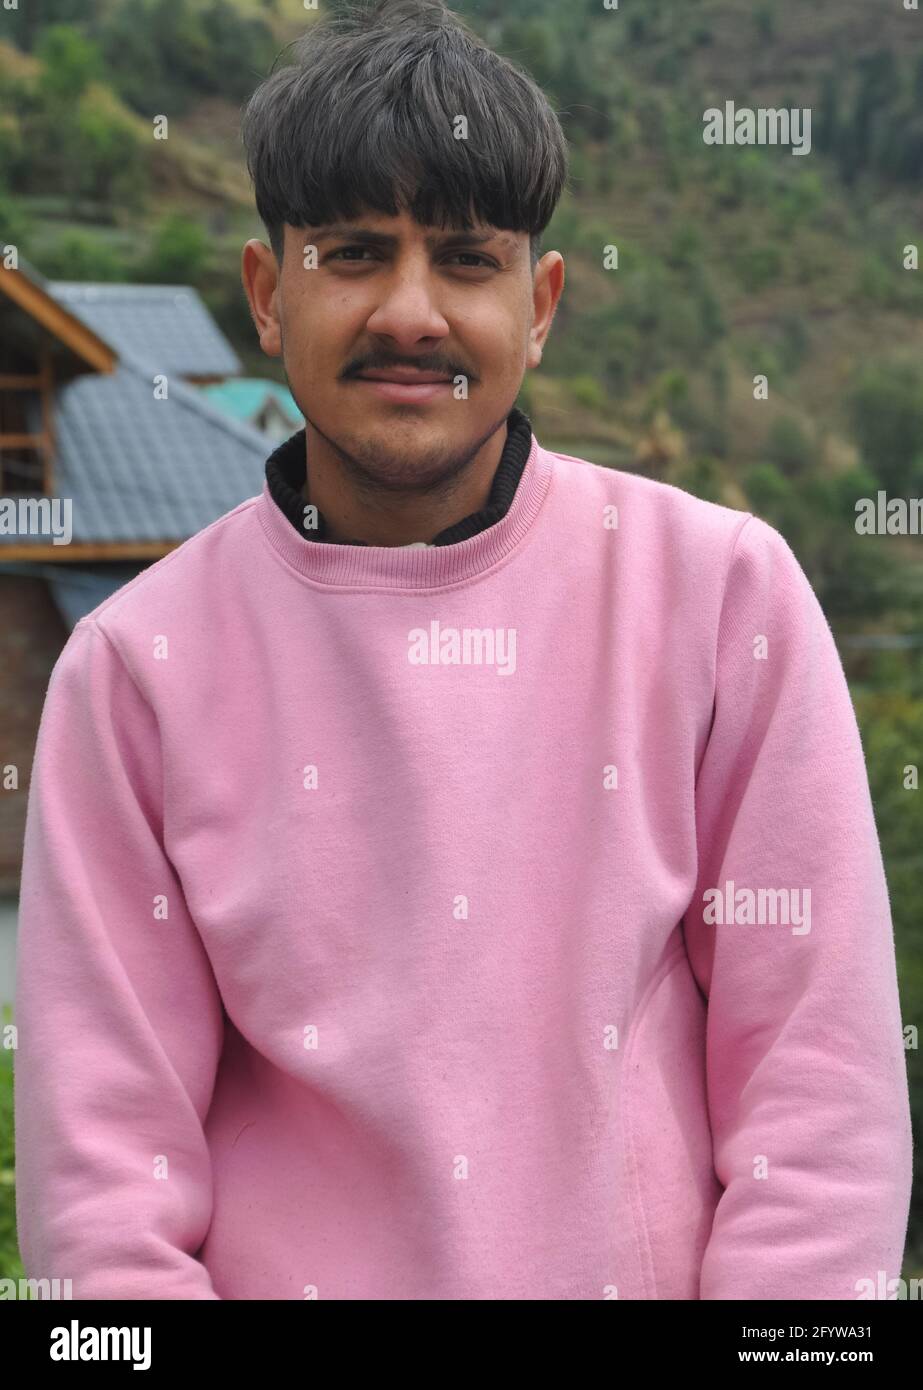 Retrato de un chico joven con buen aspecto con sudadera de color rosa, UN guapo hombre joven del norte de la India de pie al aire libre con mirar a la cámara Foto de stock